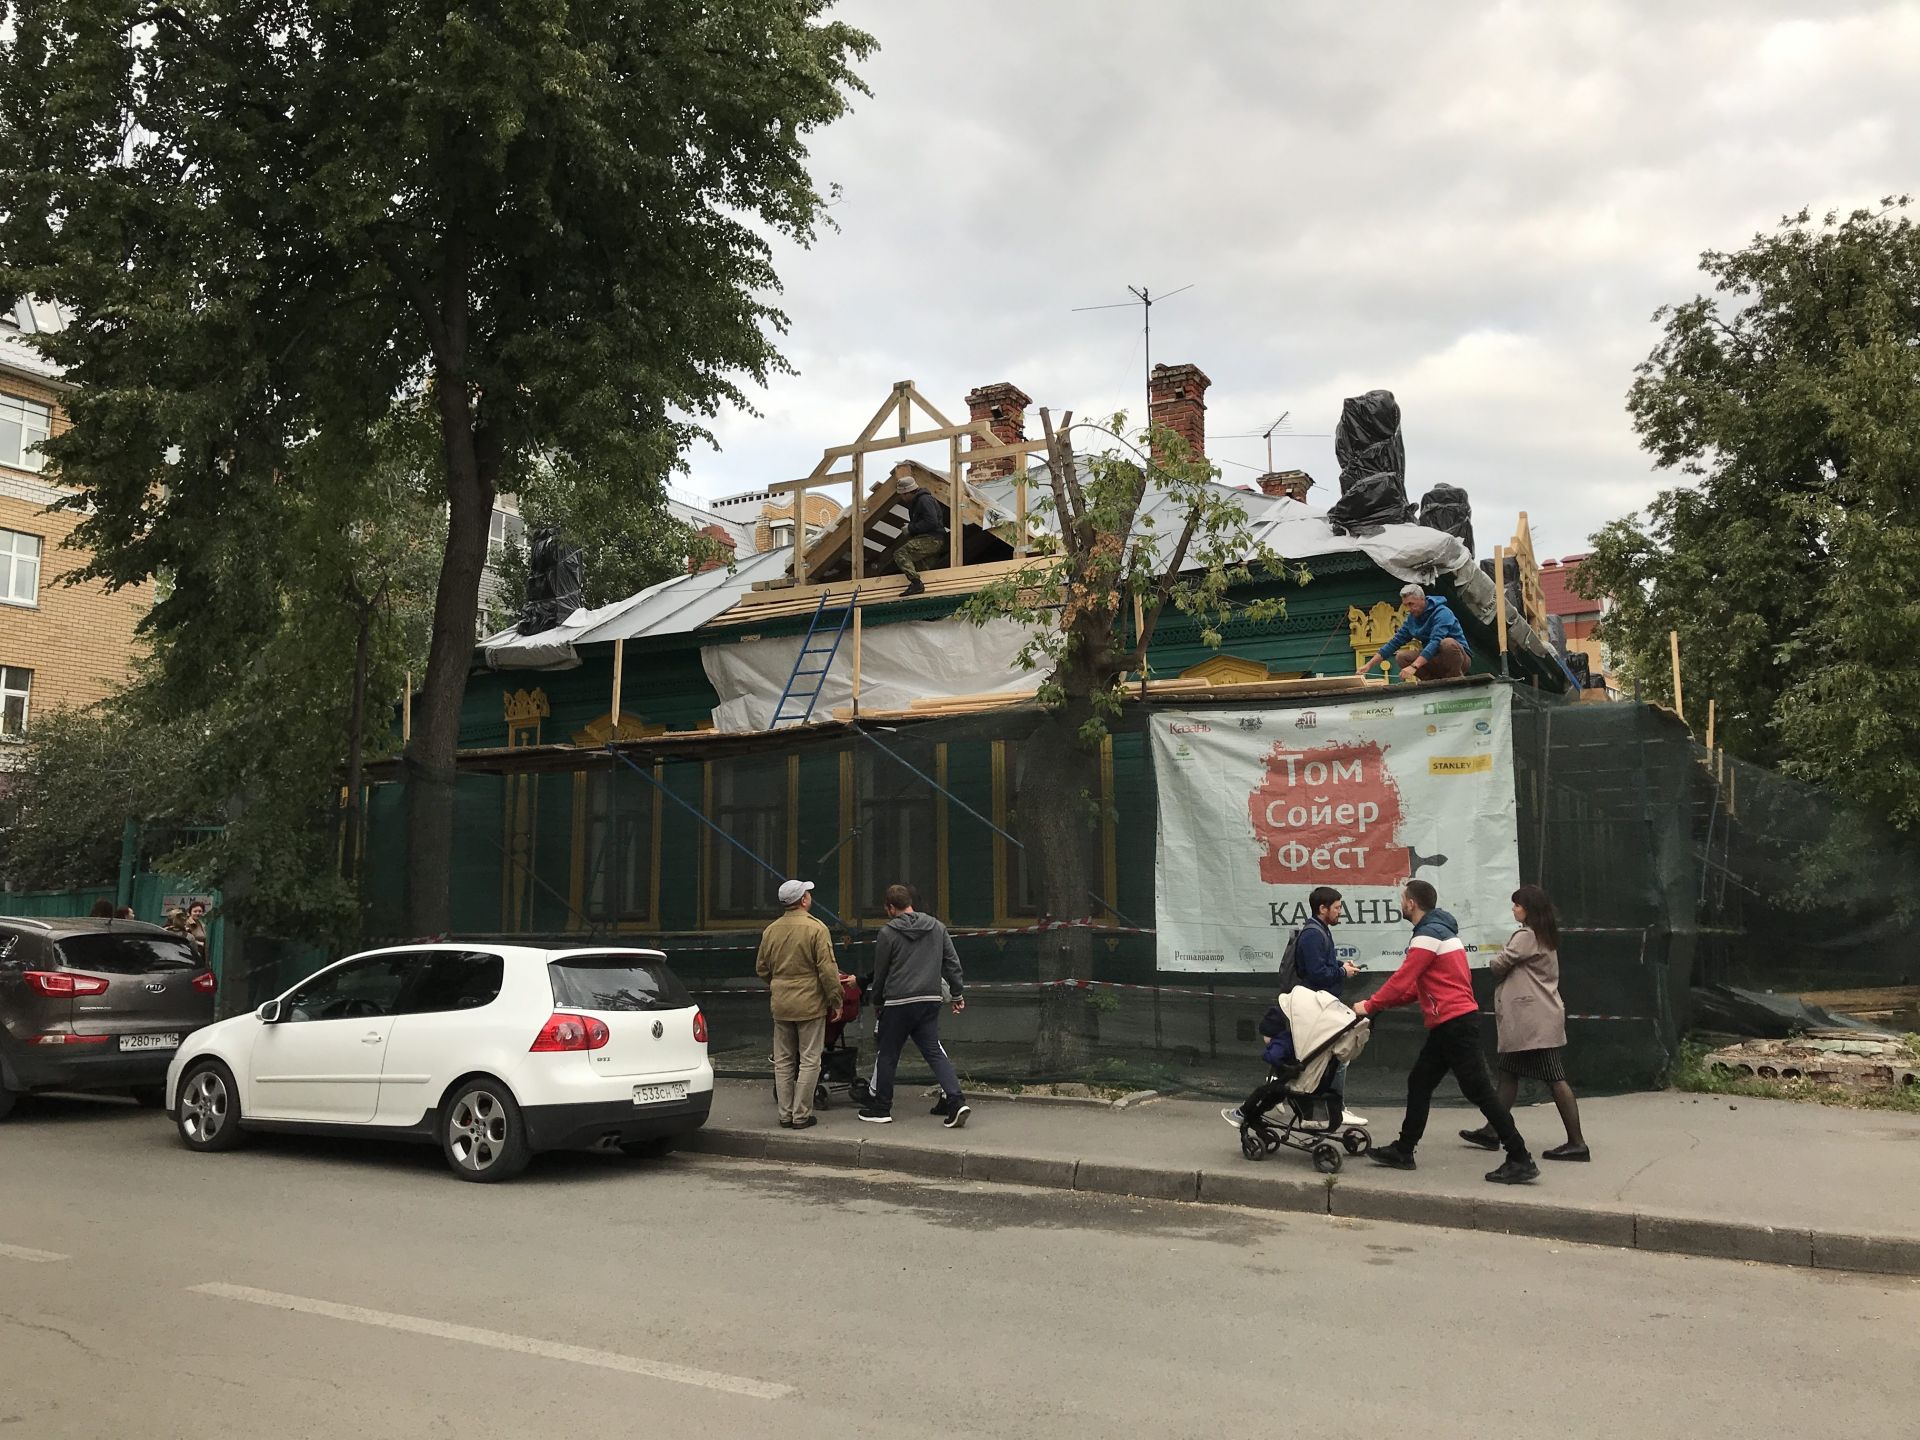 Фестиваль Тома Сойера 2019 в Казани: теперь красить! 30 июля 2019